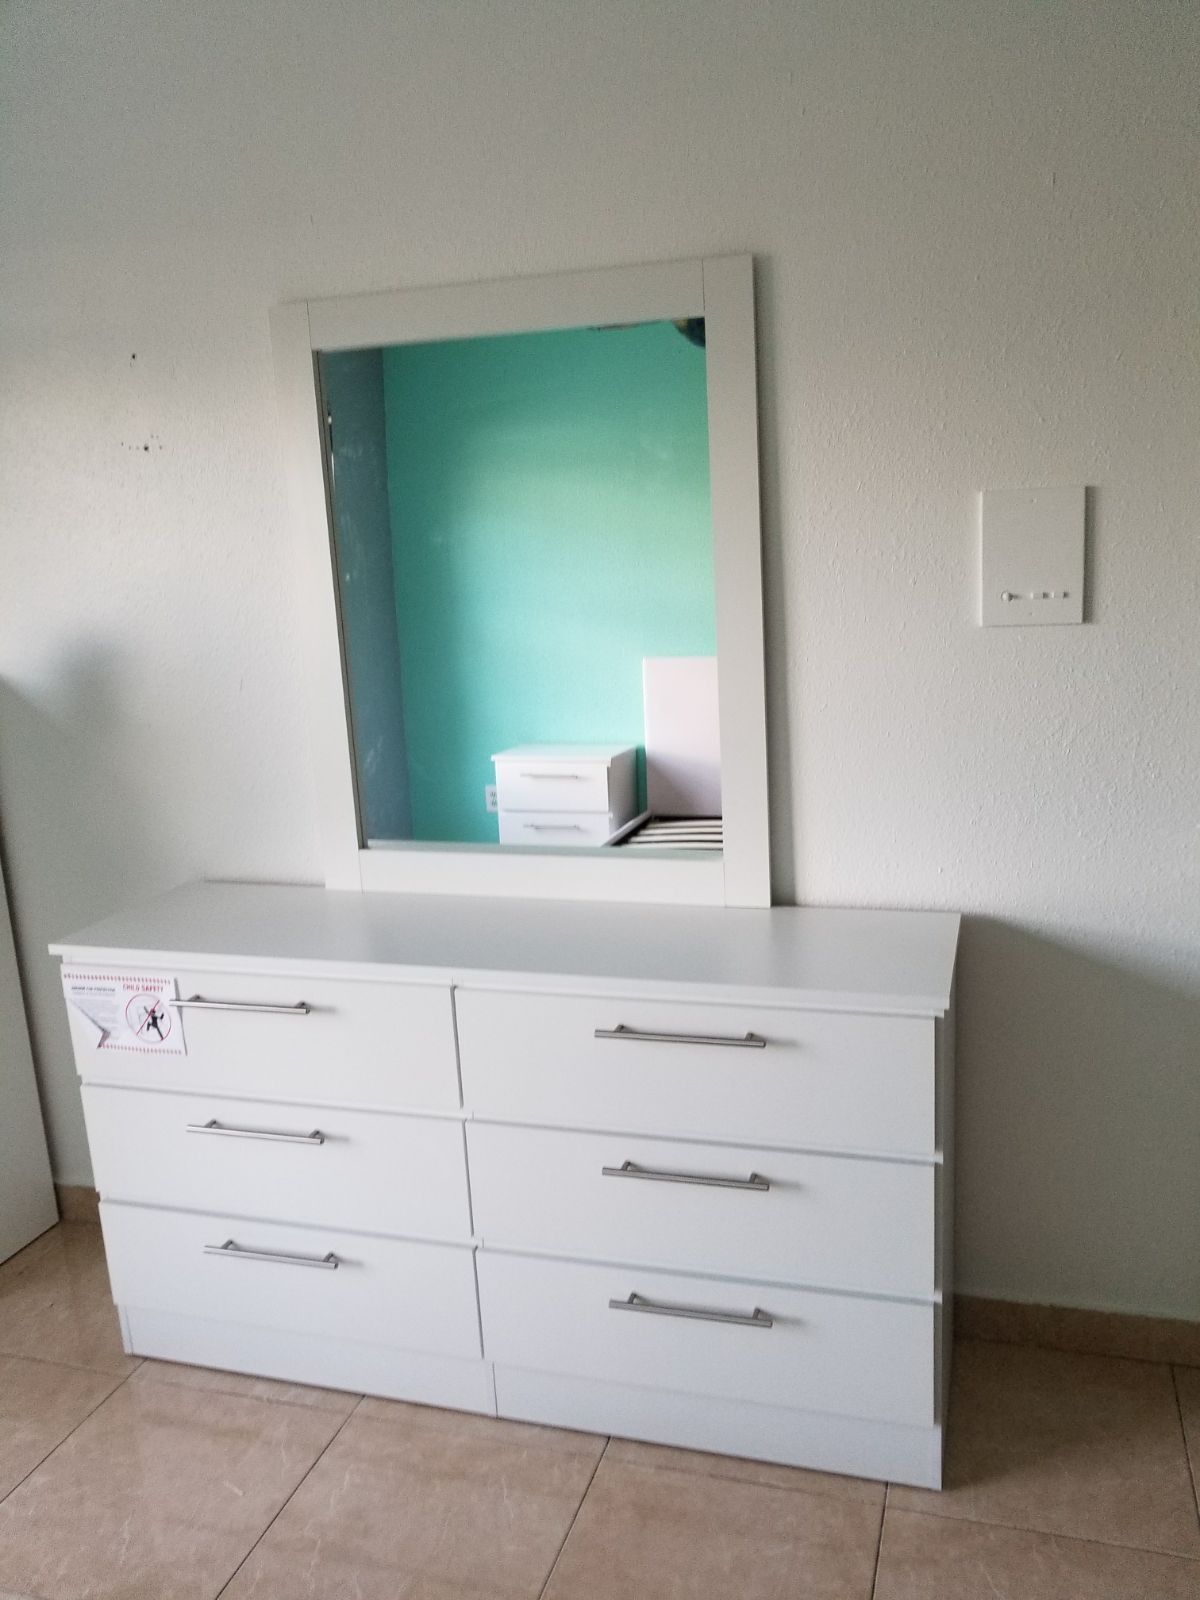 Comoda con espejo... Dresser with mirror